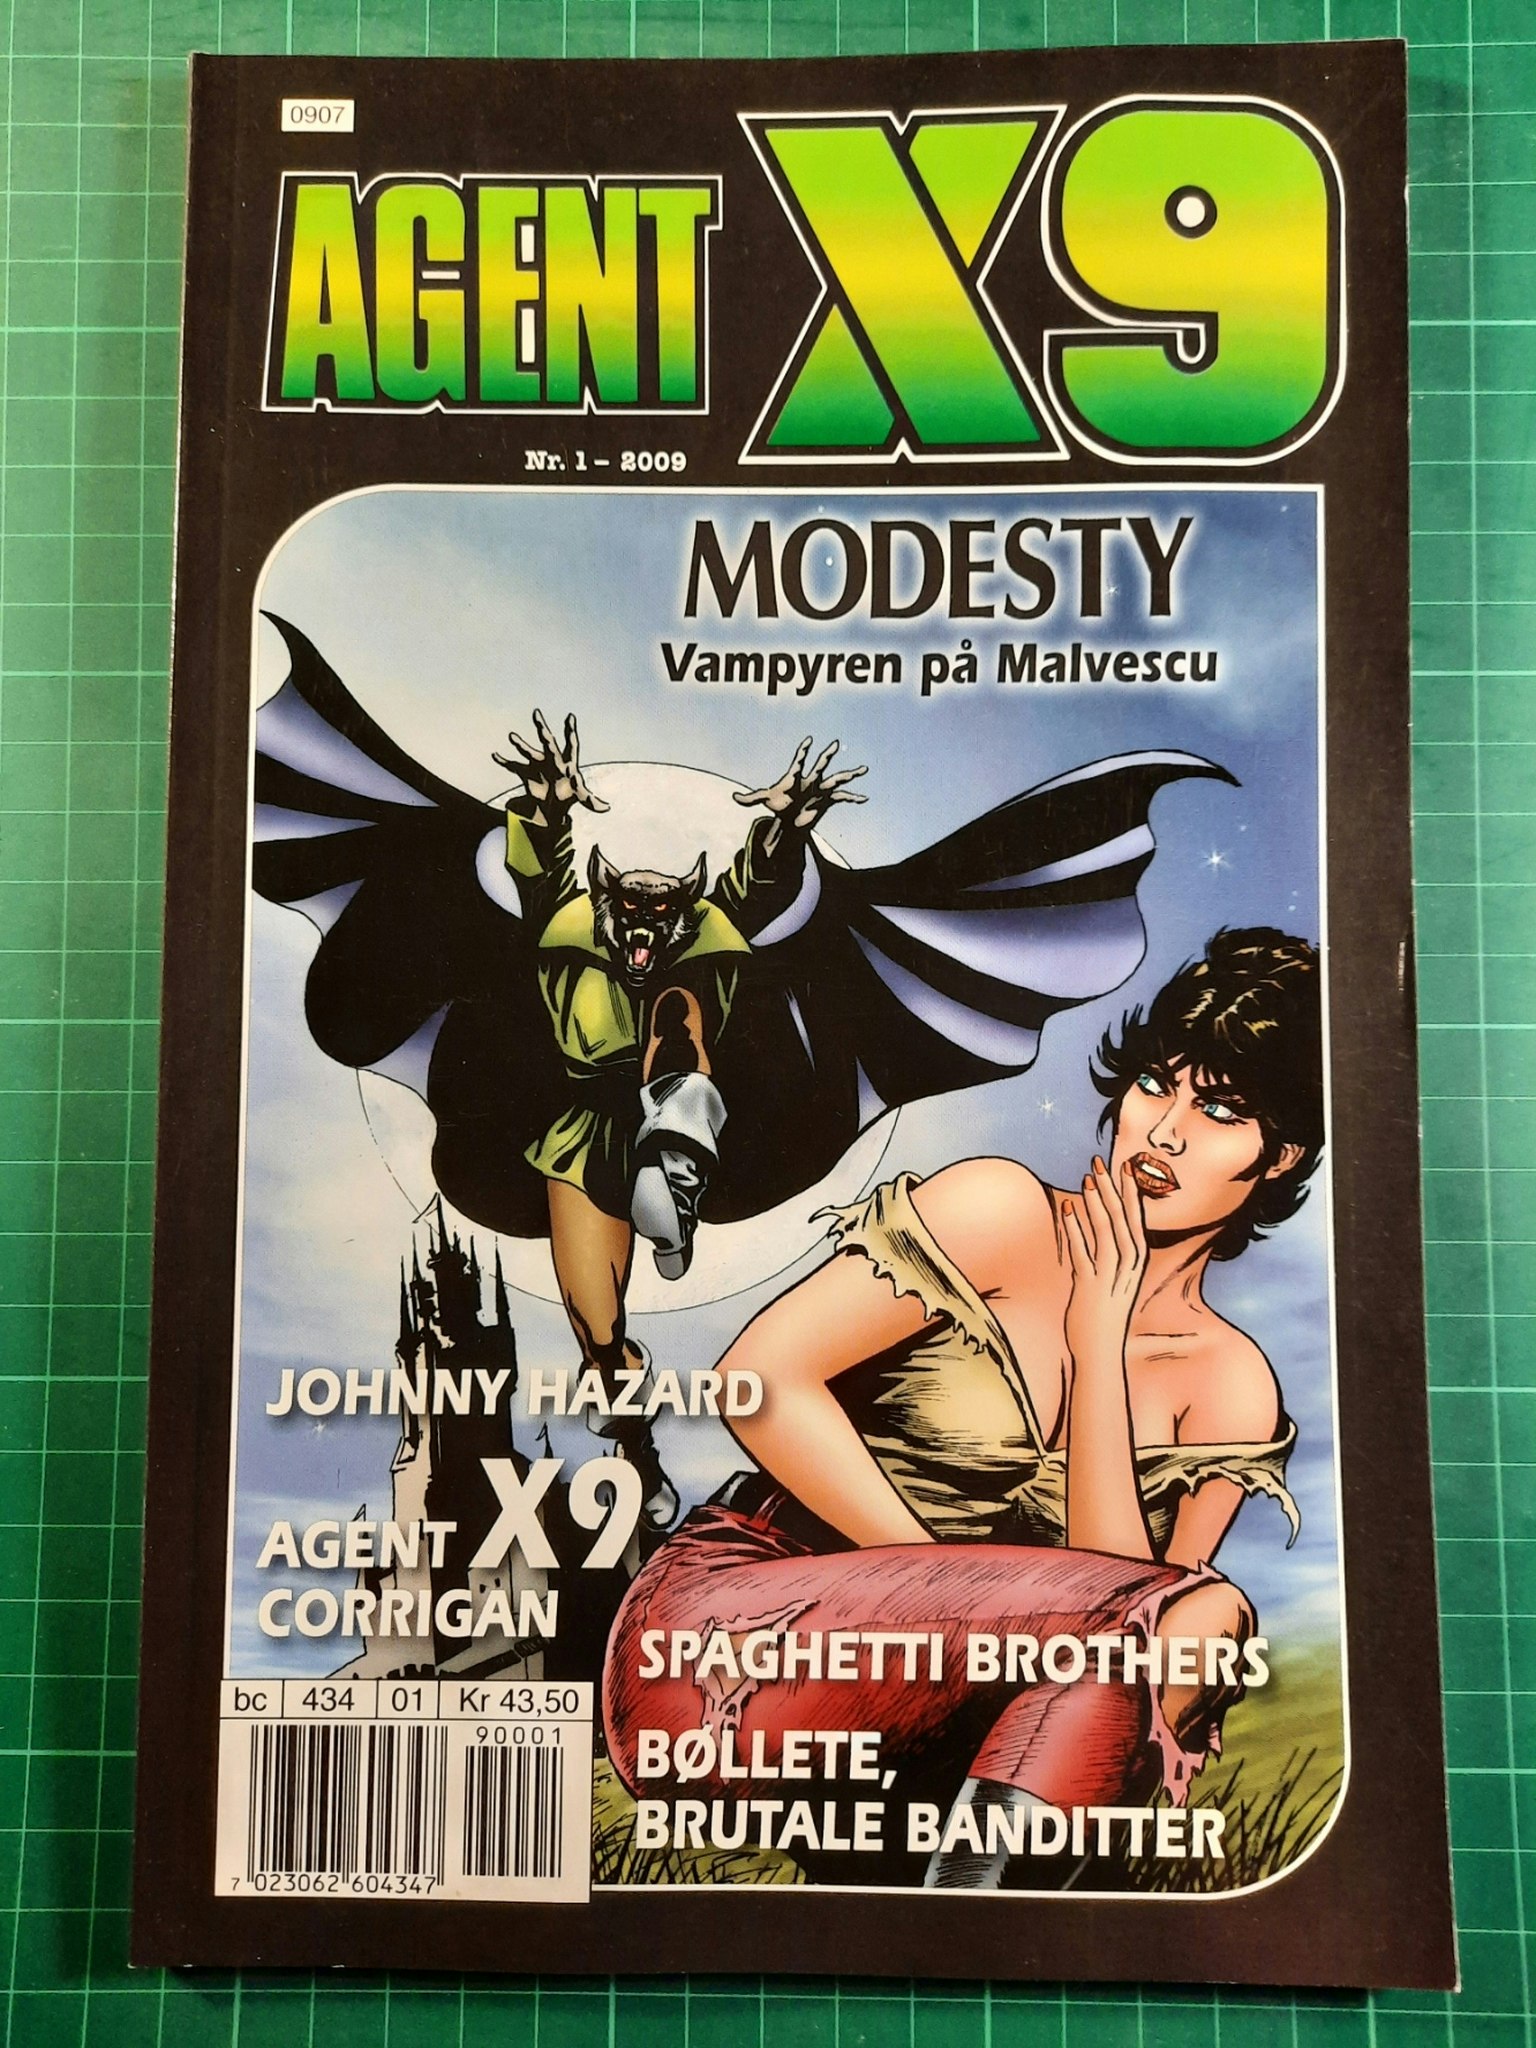 Agent X9 2009 - 01